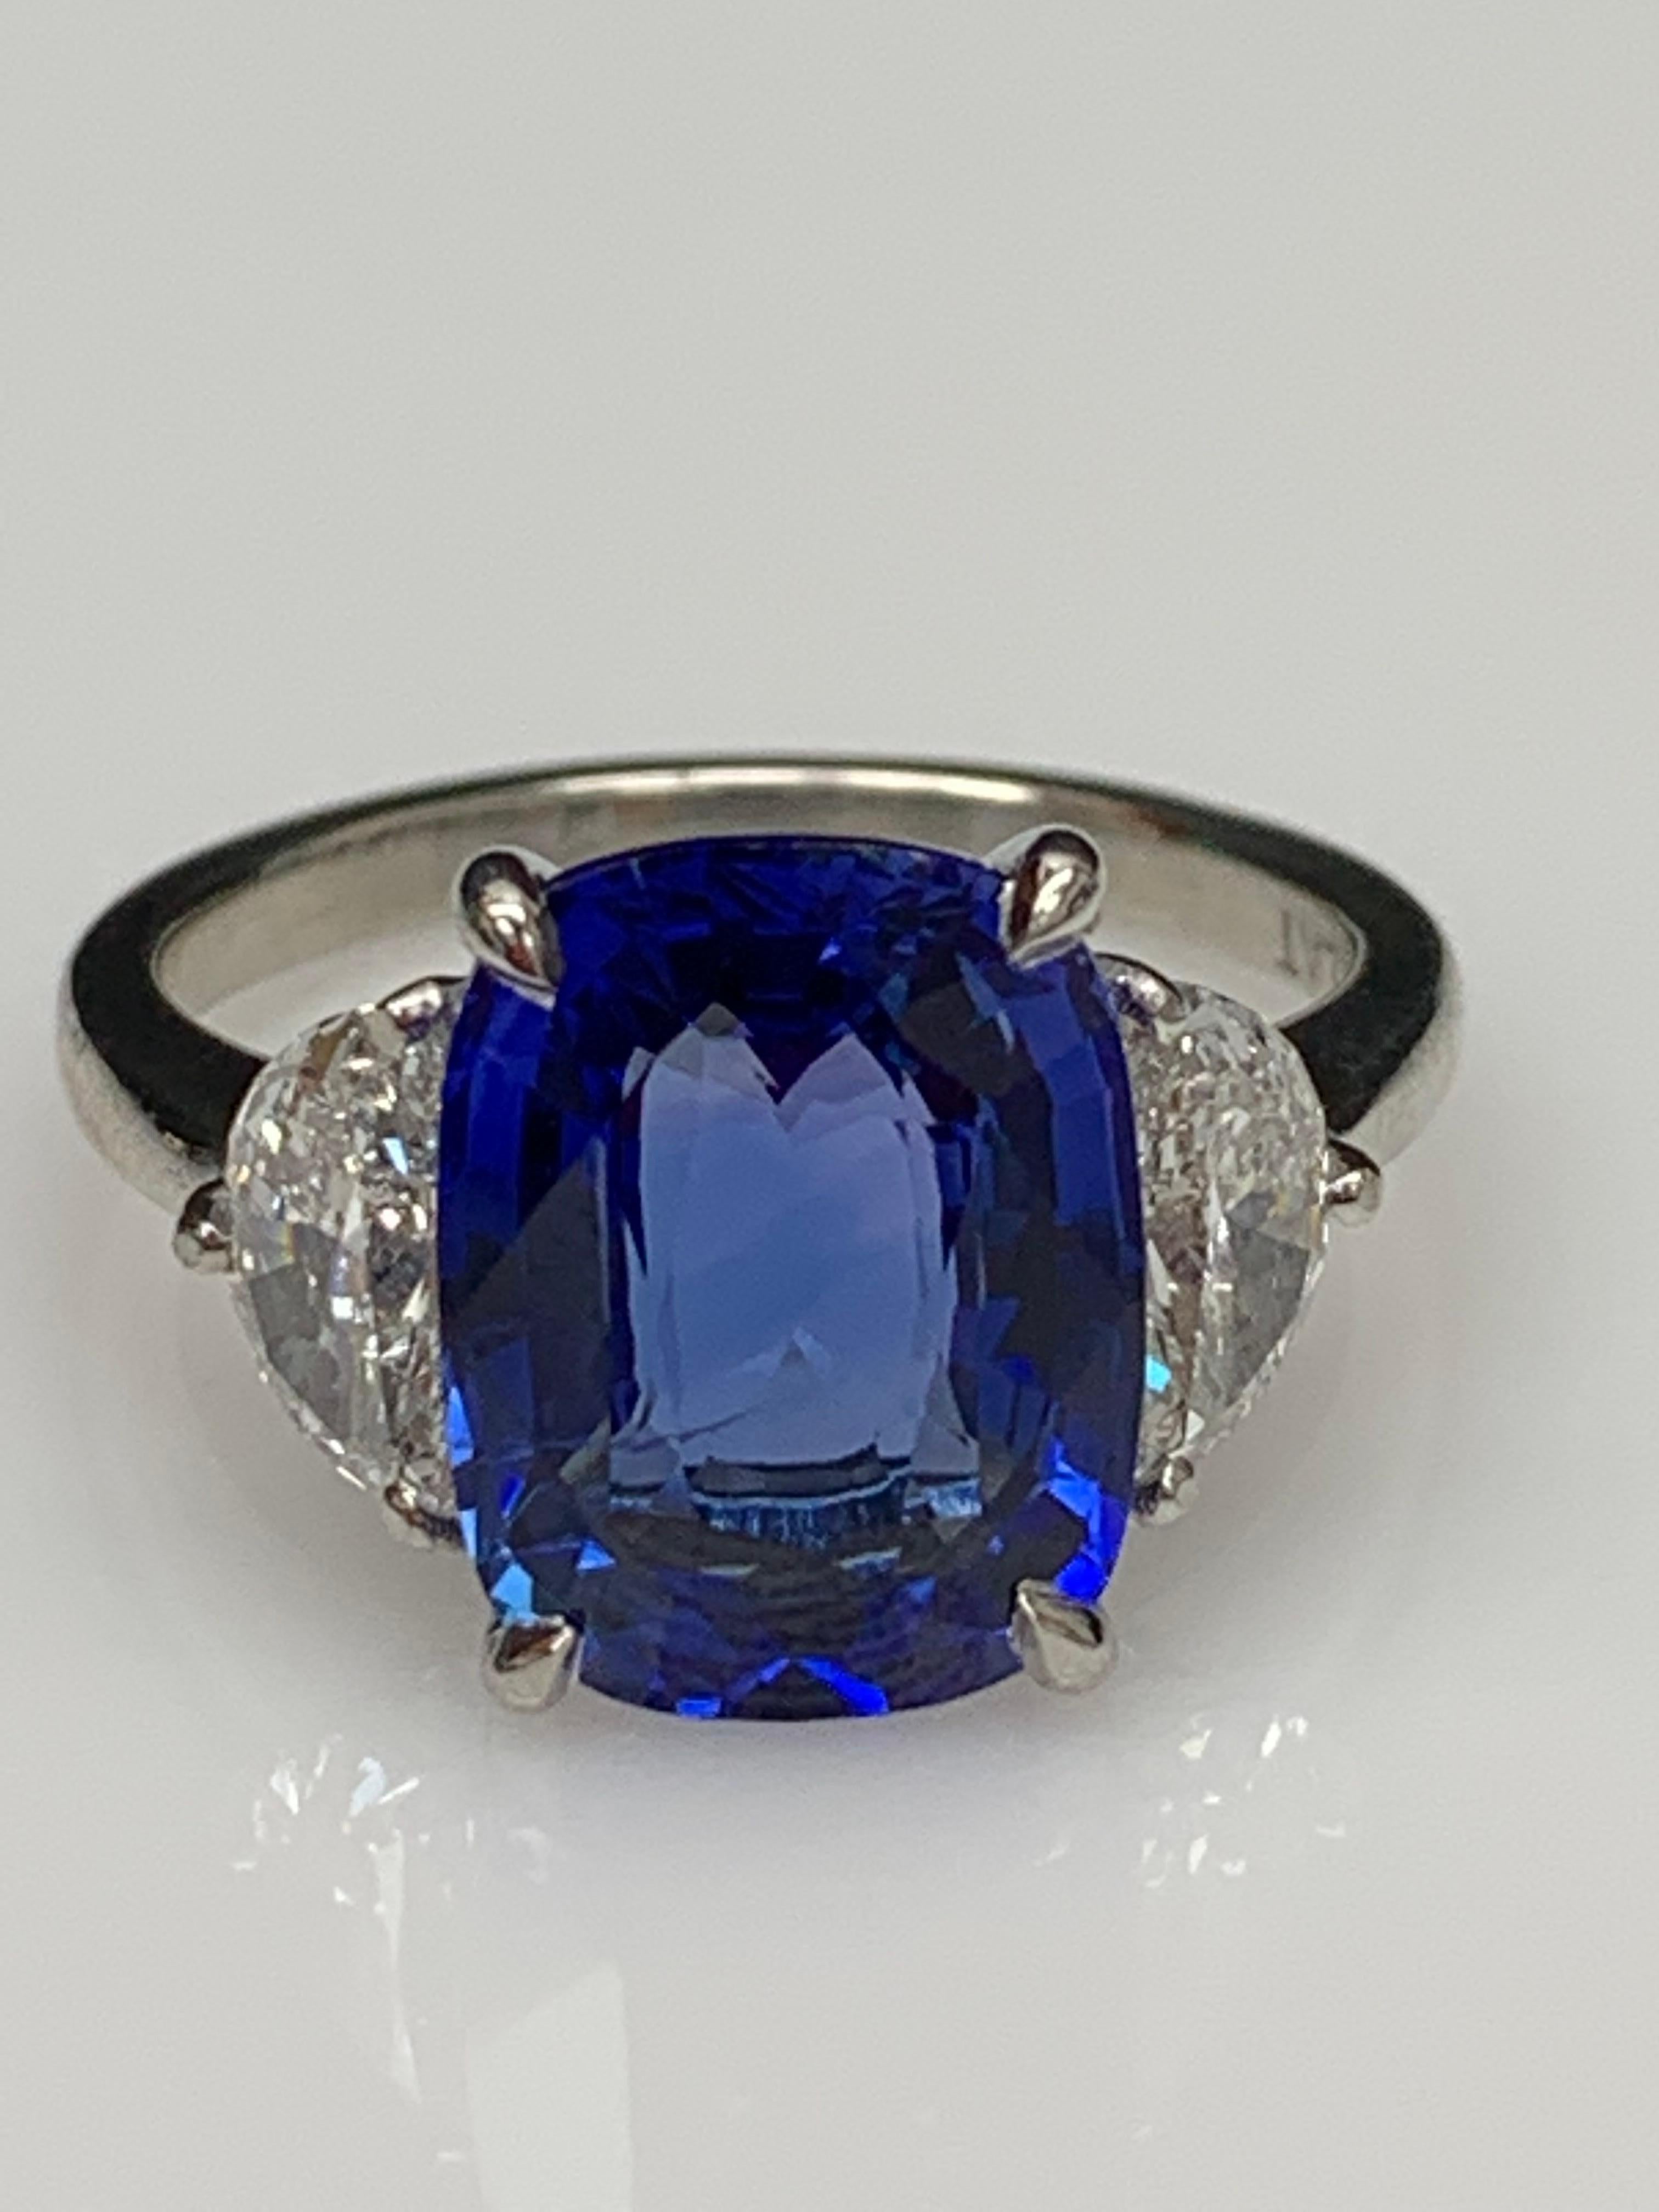 Montre un saphir bleu de taille coussin et de couleur vibrante pesant 5.12 carats, flanqué de deux diamants demi-lune de taille brillant pesant 0.89 carats au total. Élégamment serti dans une composition de platine polie.